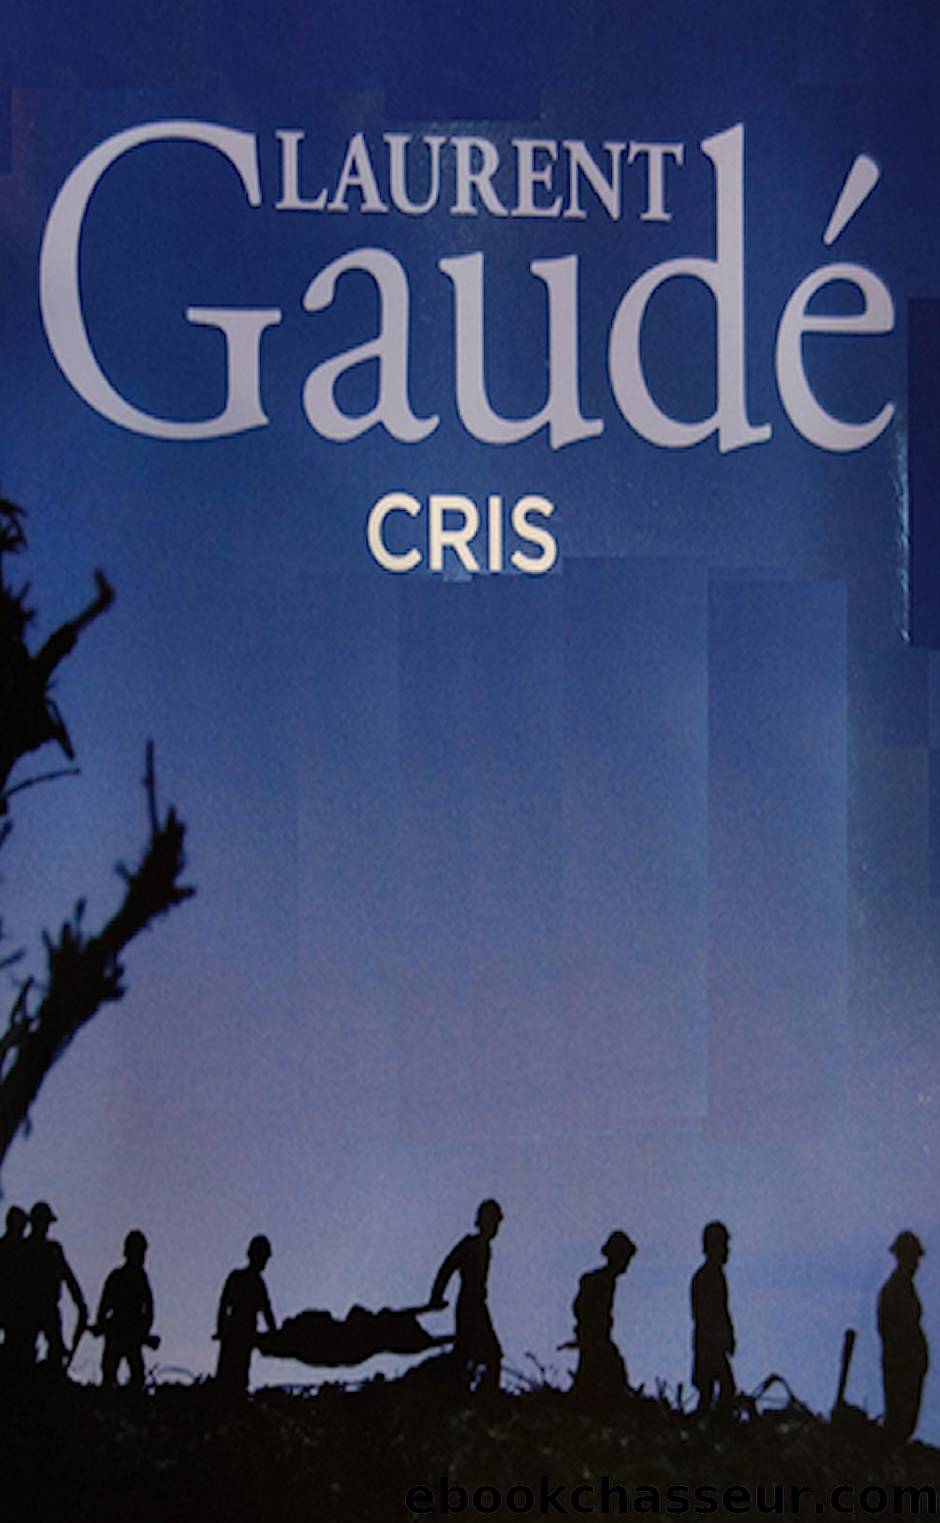 Cris by Laurent Gaudé